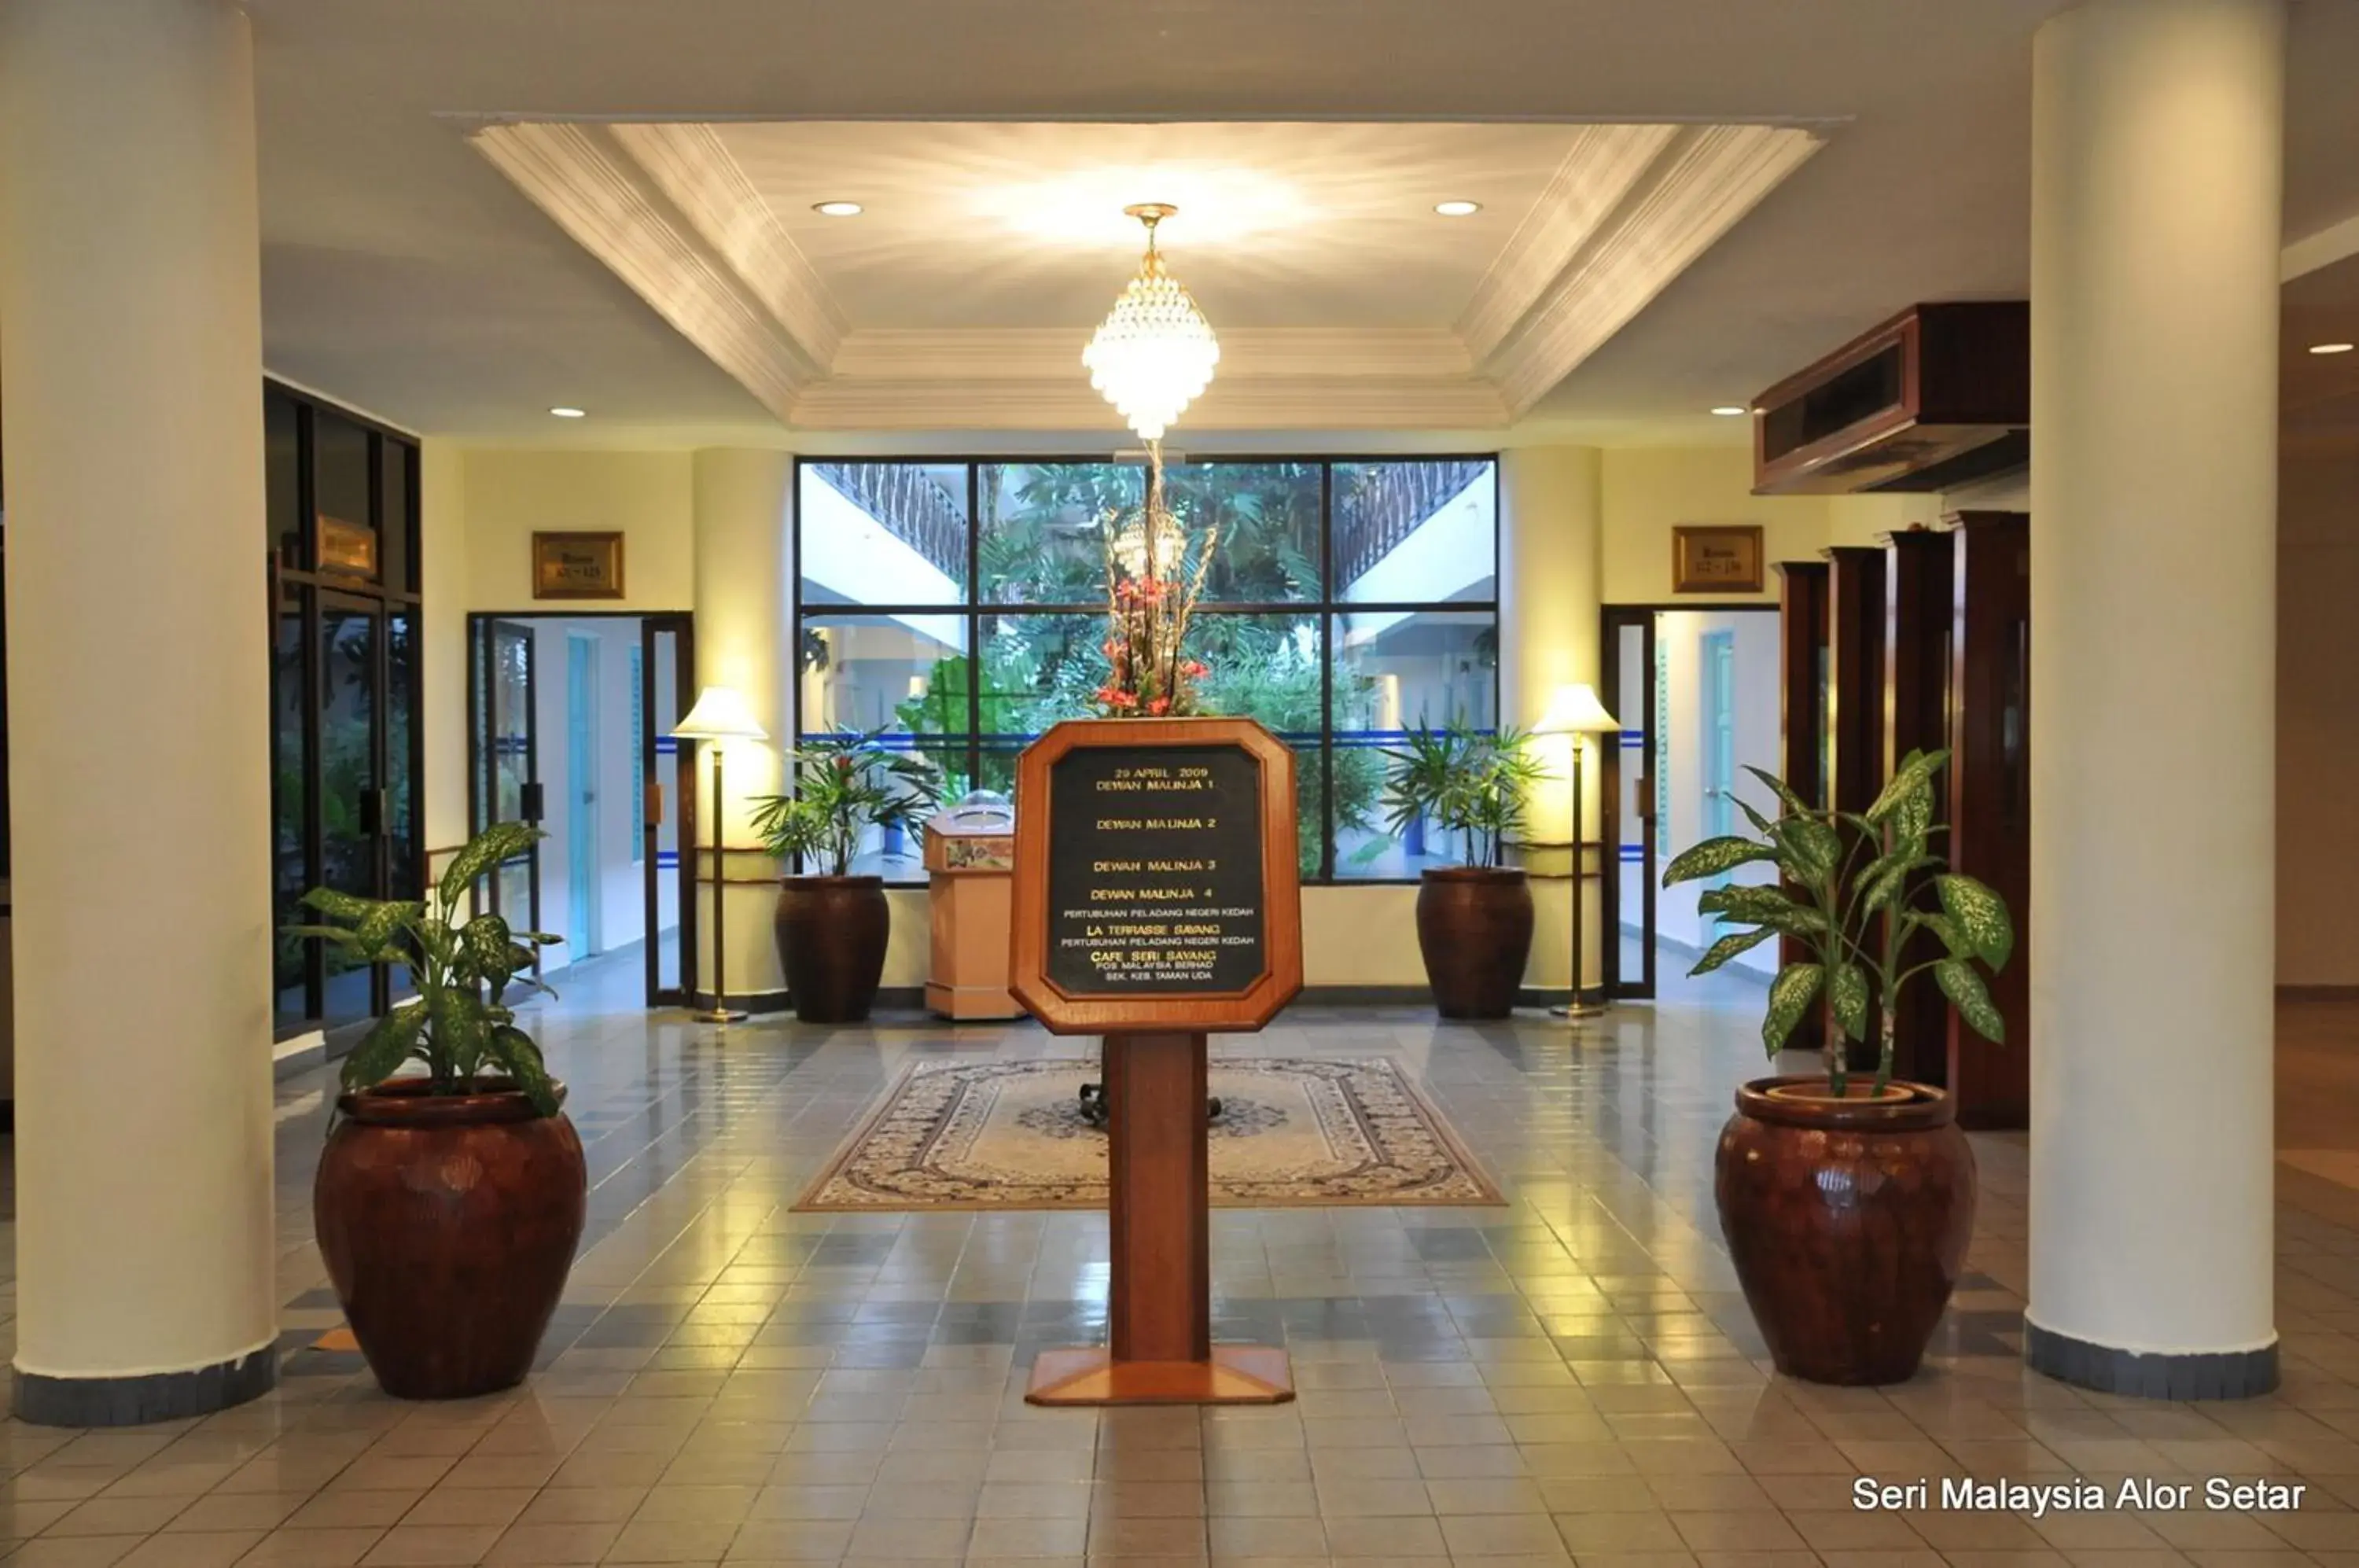 Lobby or reception in Hotel Seri Malaysia Alor Setar